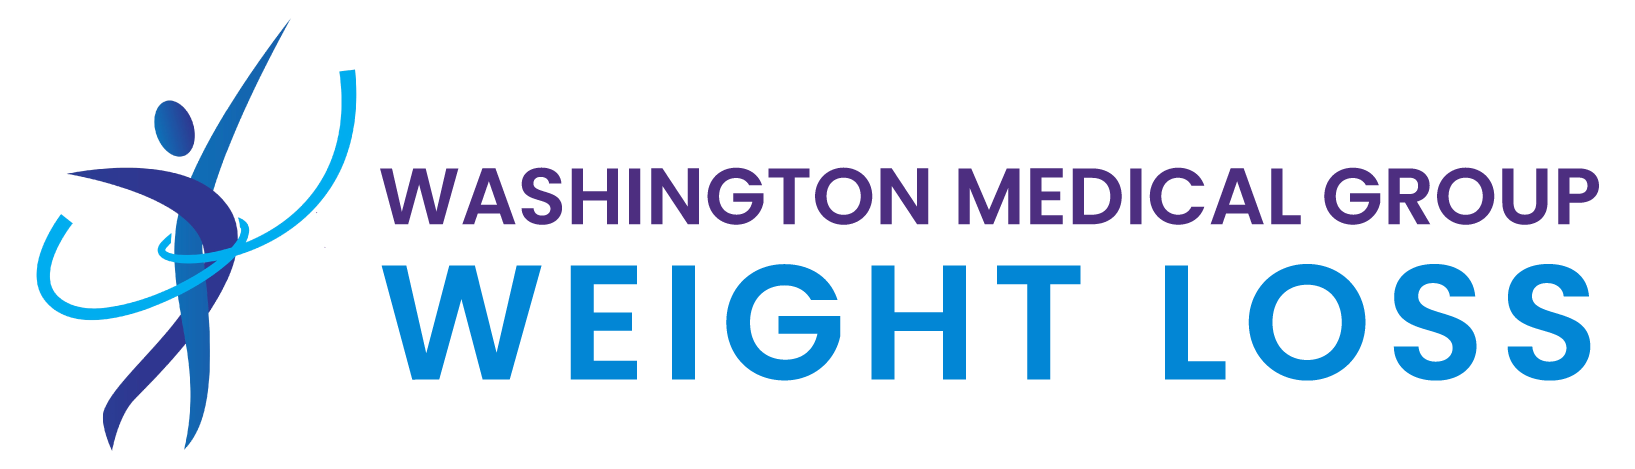 Washington Medical Group